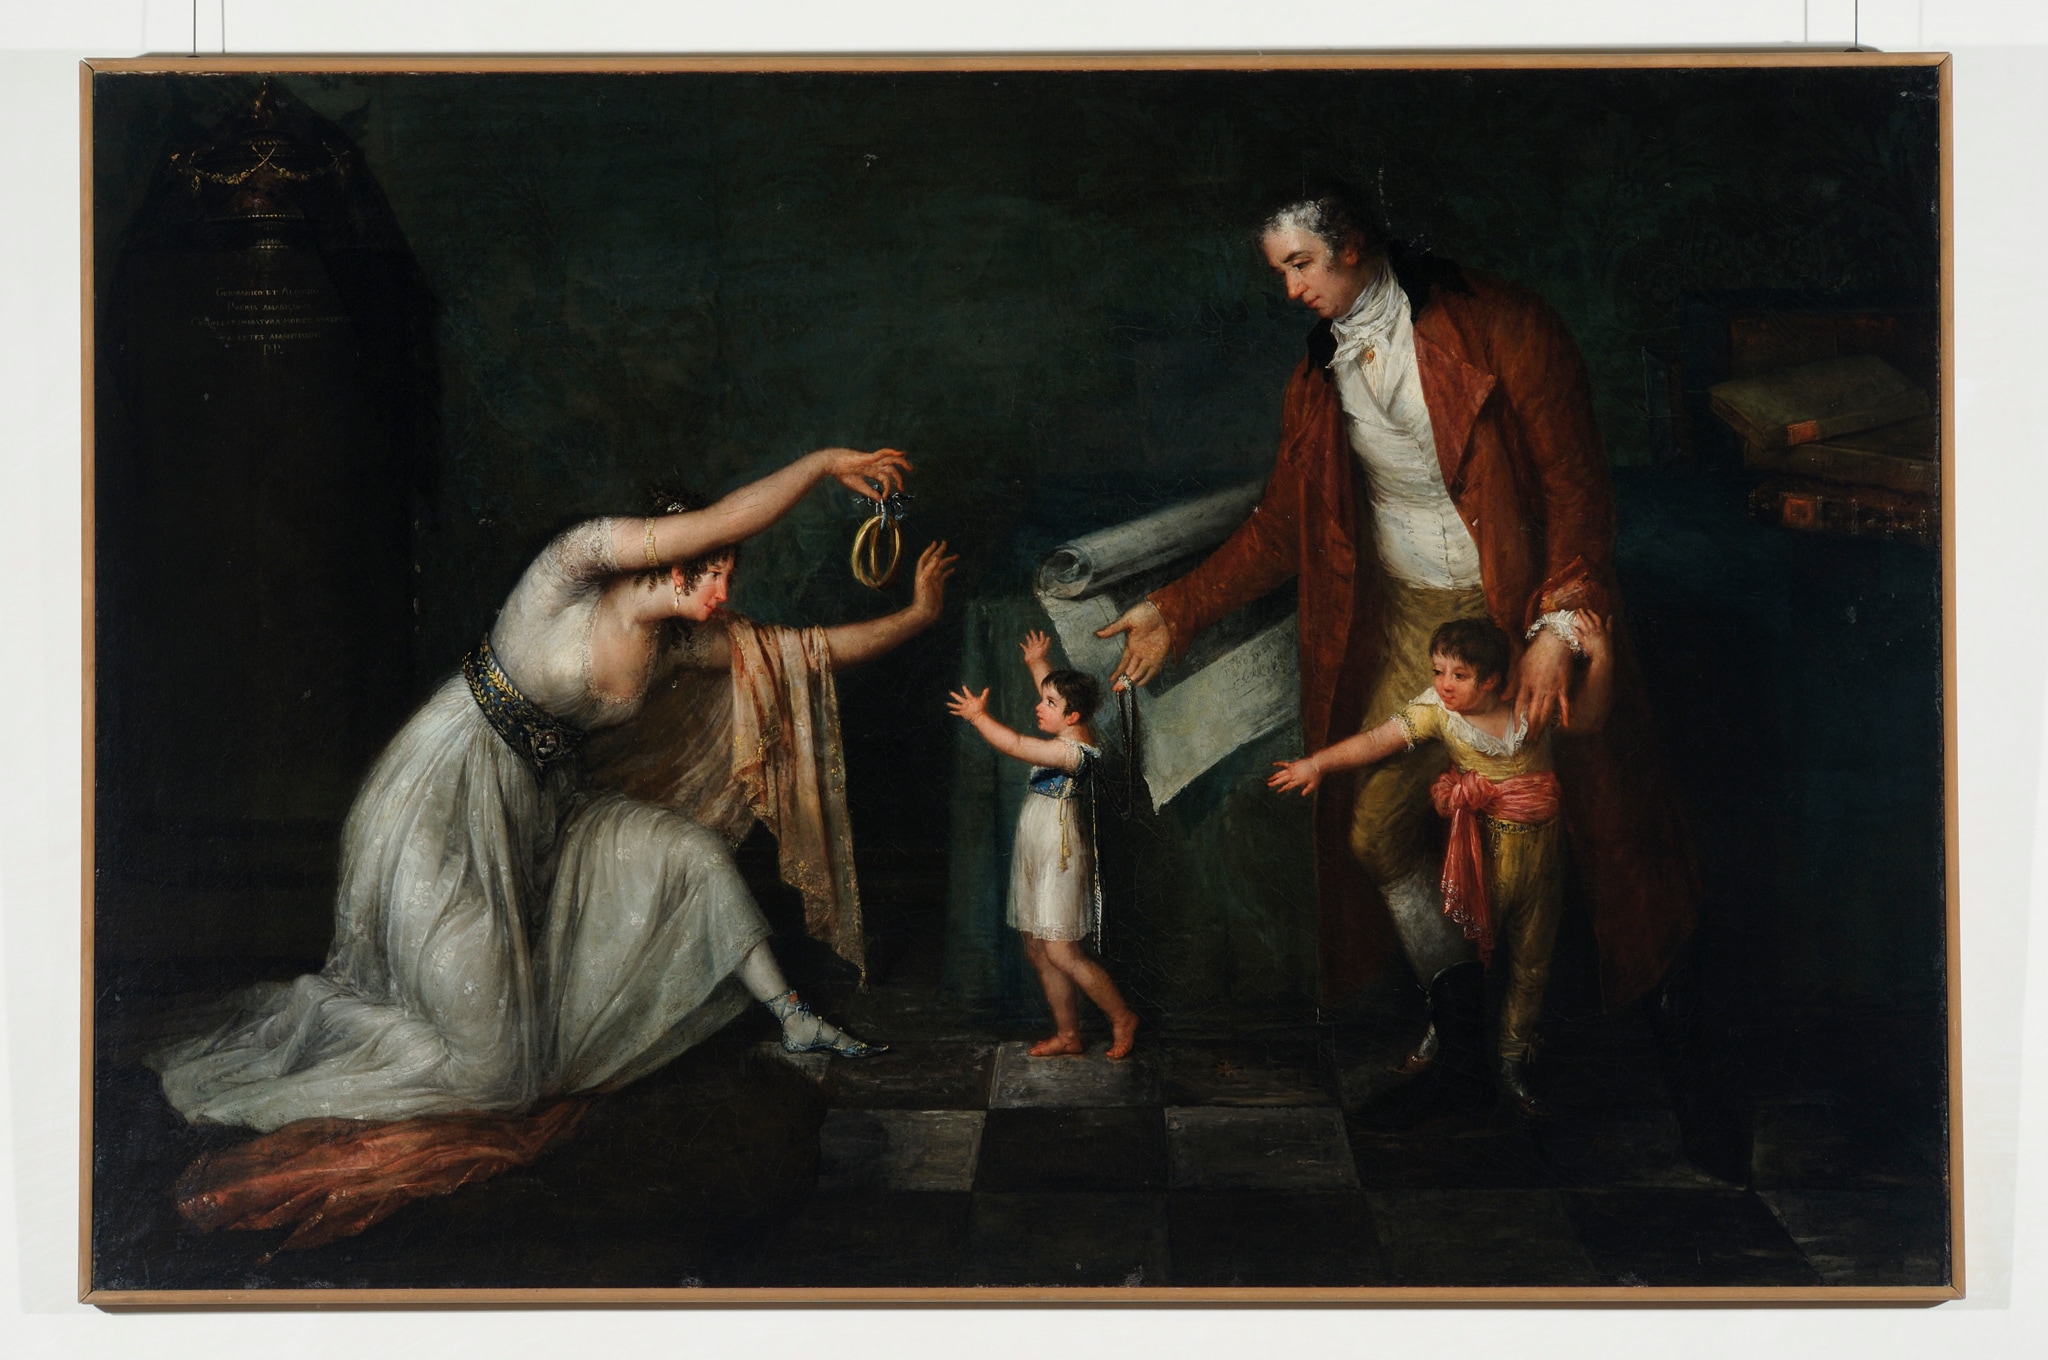 Antonio Canova (Possagno 1757 - Venezia 1822) "La famiglia dell’incisore Pietro Maria Vitali", 1798-1800 circa. Olio su tela, 100 x 151 cm 